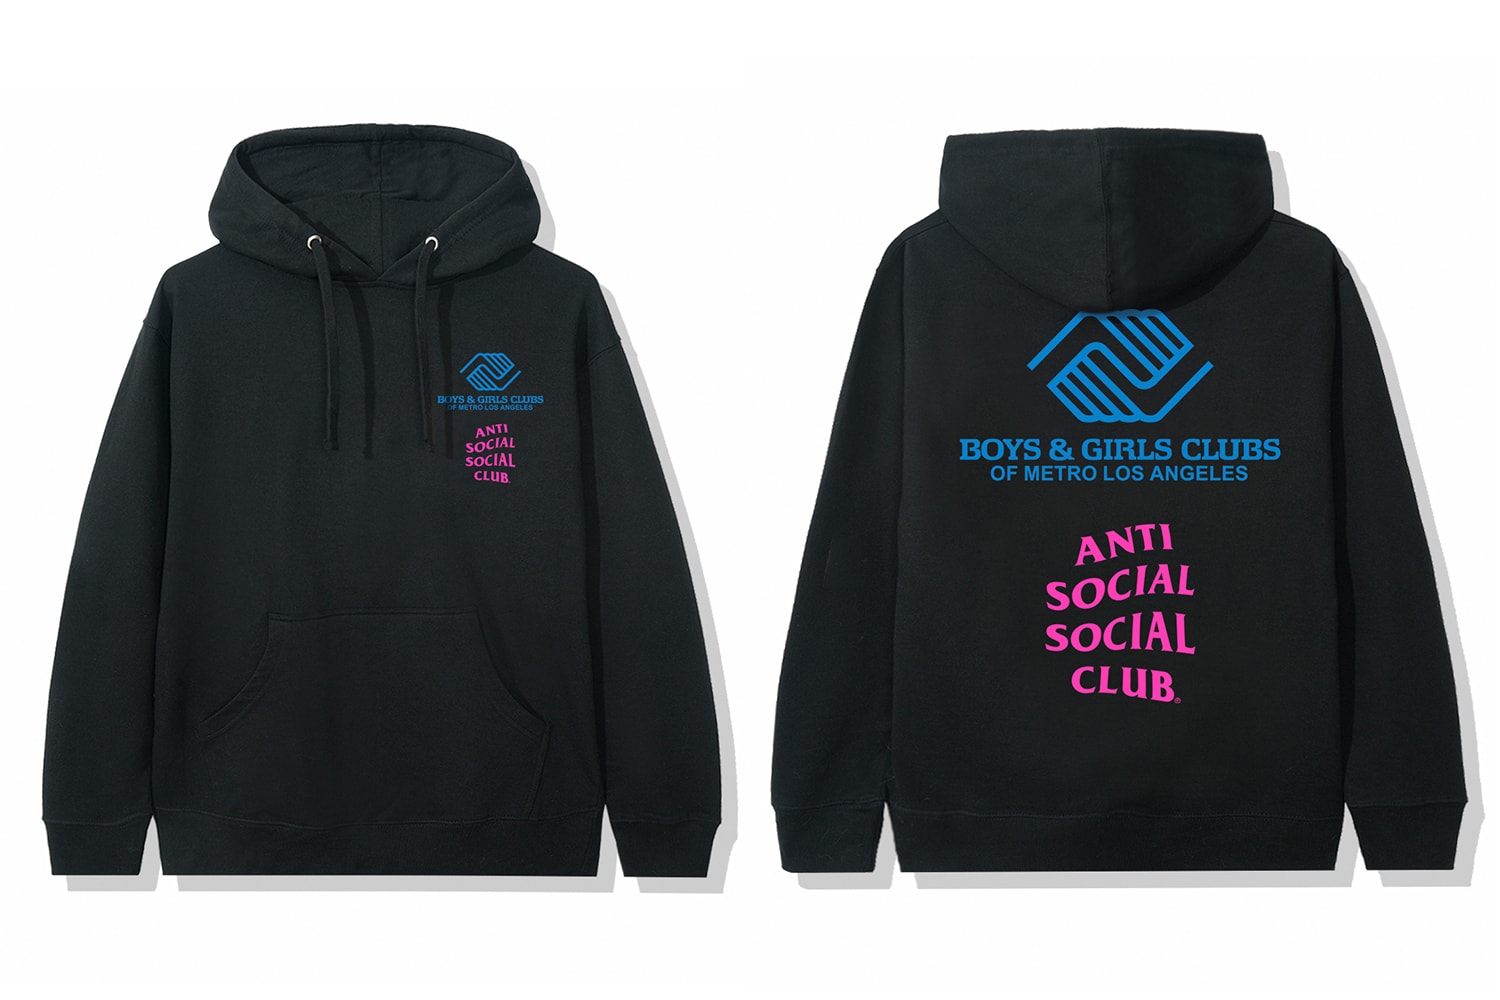 Anti Social Social Club Boys & Girls Clubs of Metro Los Angeles Capsule Release Info Buy Price Date T shirt Hoodie Cap